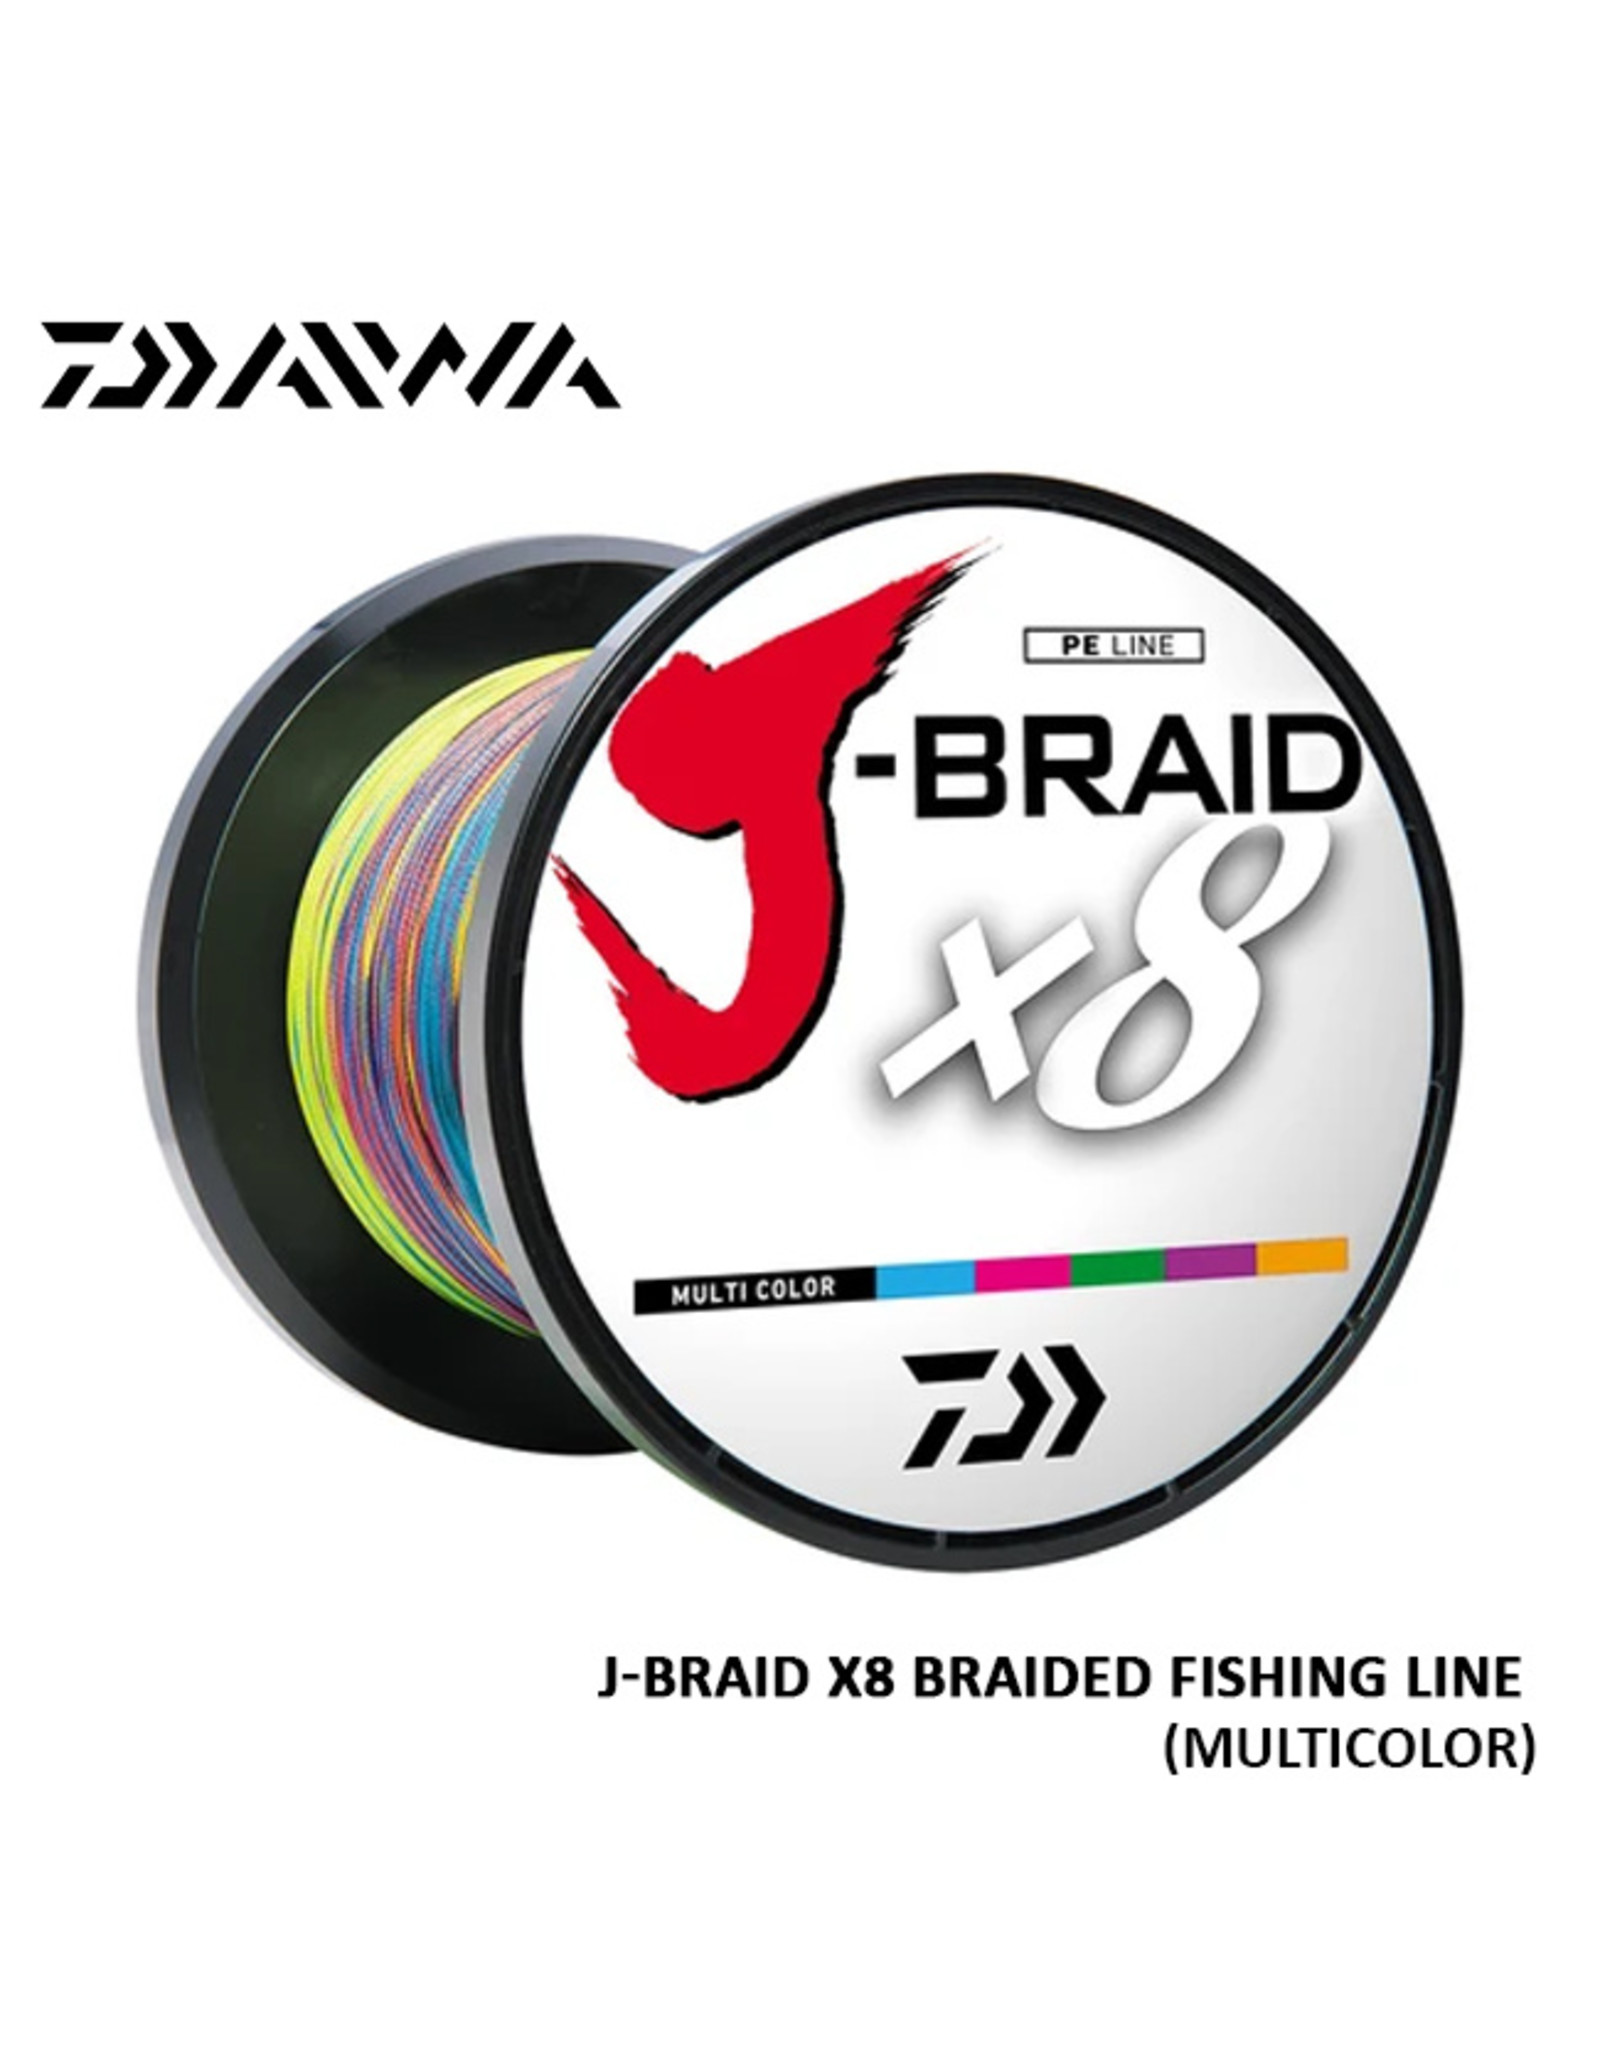 DAIWA DAIWA, J-BRAID X8 FISHING LINE 300METER/MULTICOLOR 20#